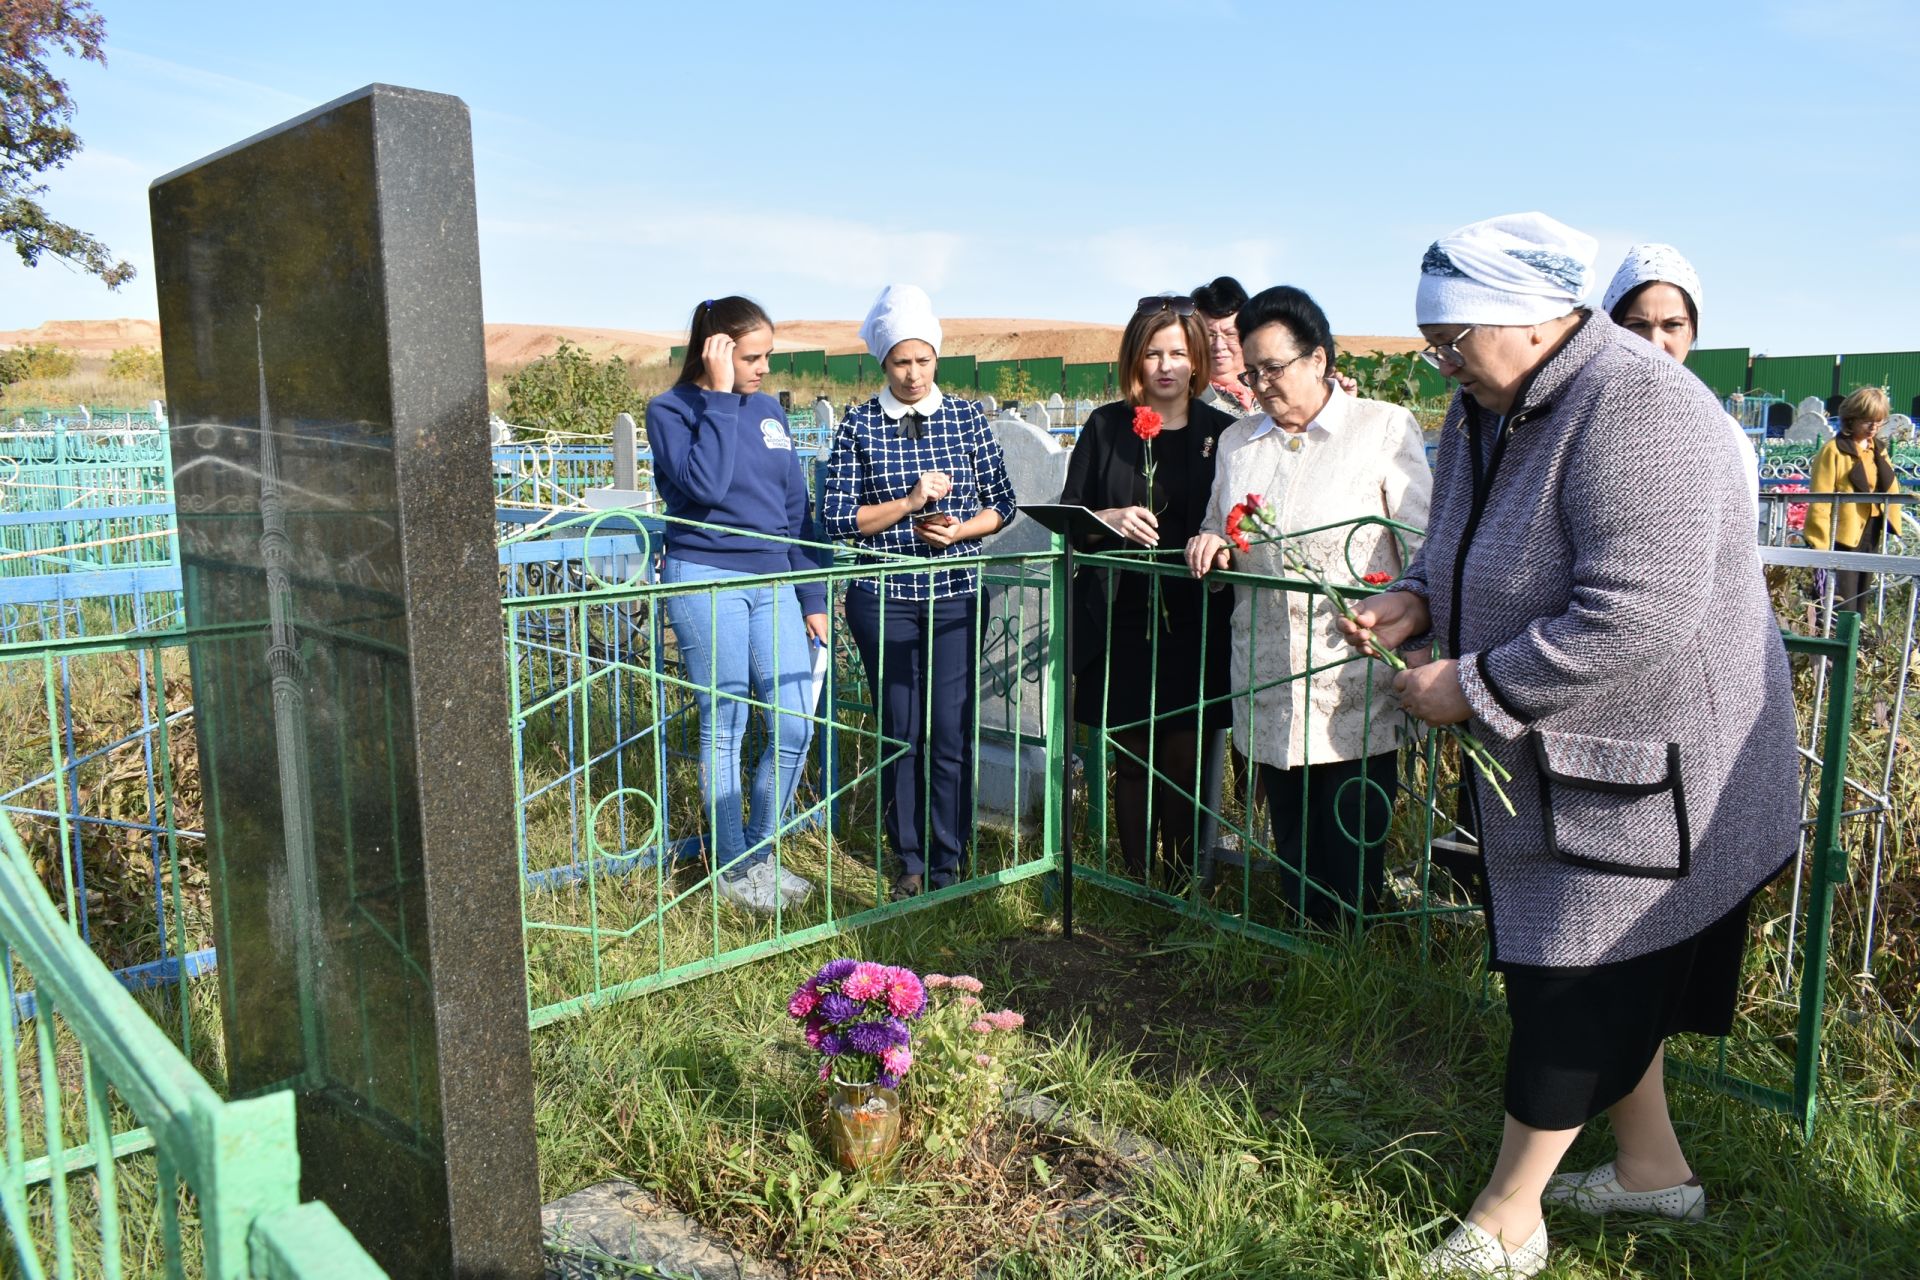 У могилы Героя Советского Союза Галимзяна Камалеева установили стойку с QR-кодом